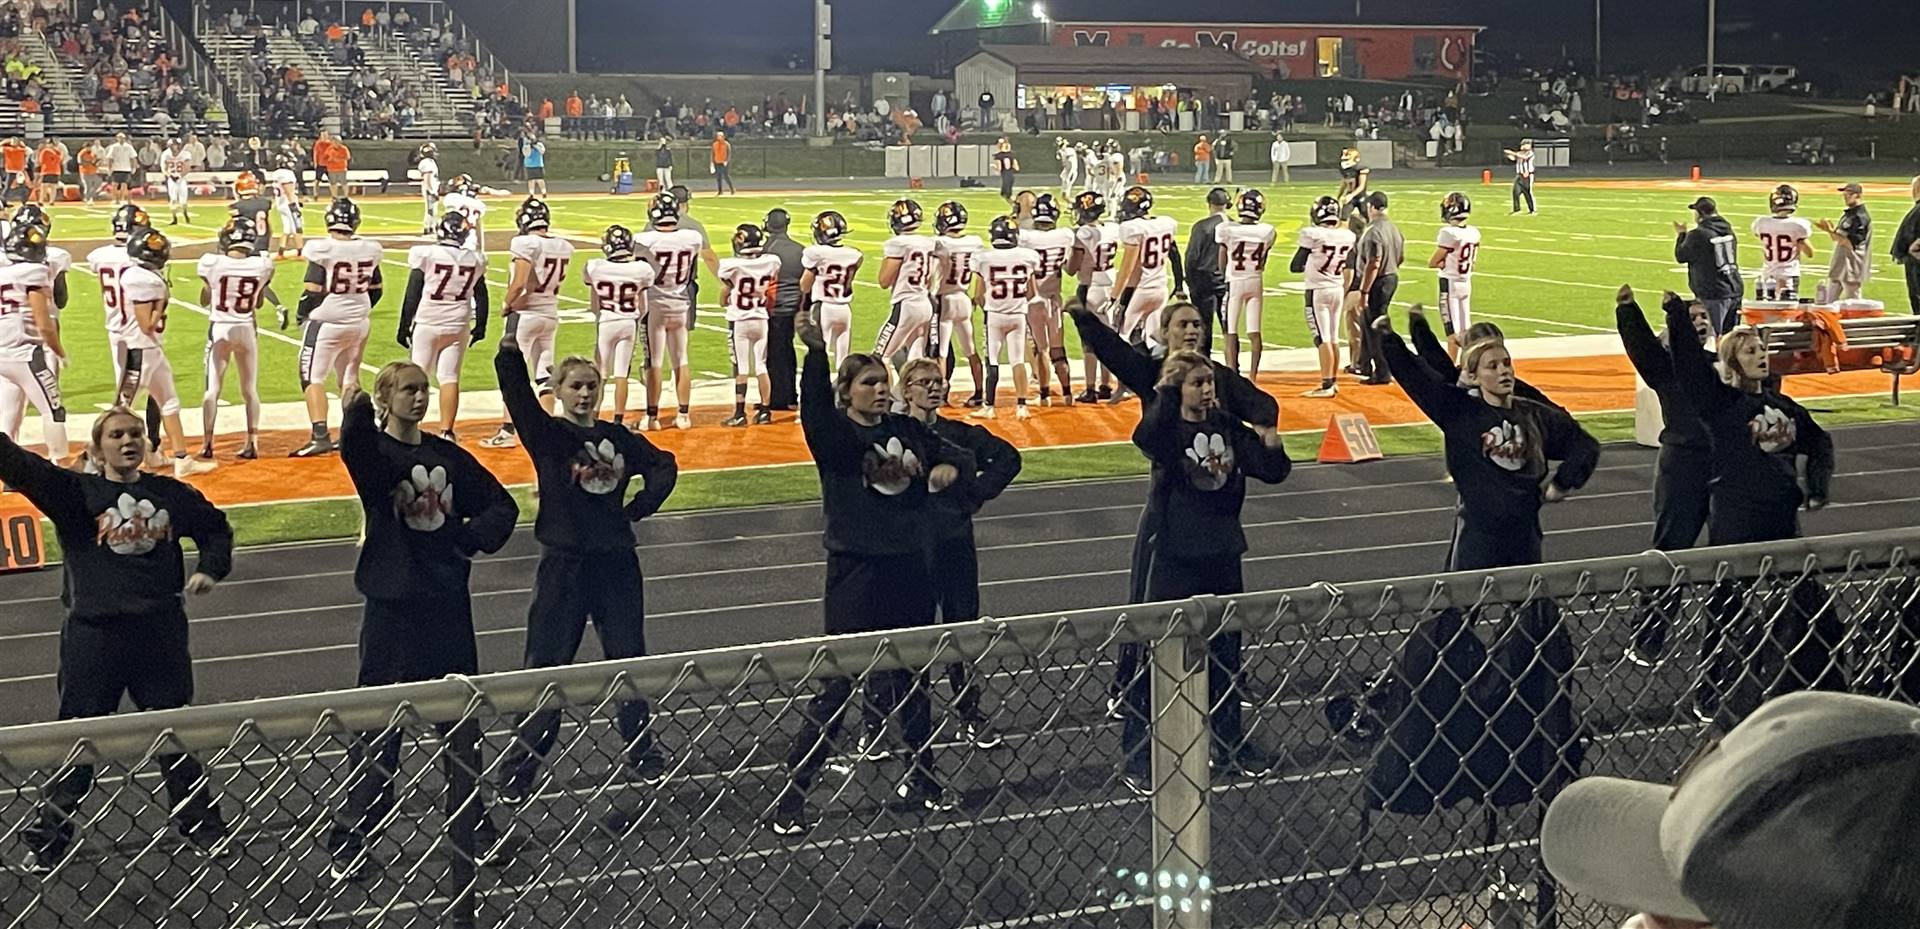 Cheerleaders Performing at the Meadowbrook Game